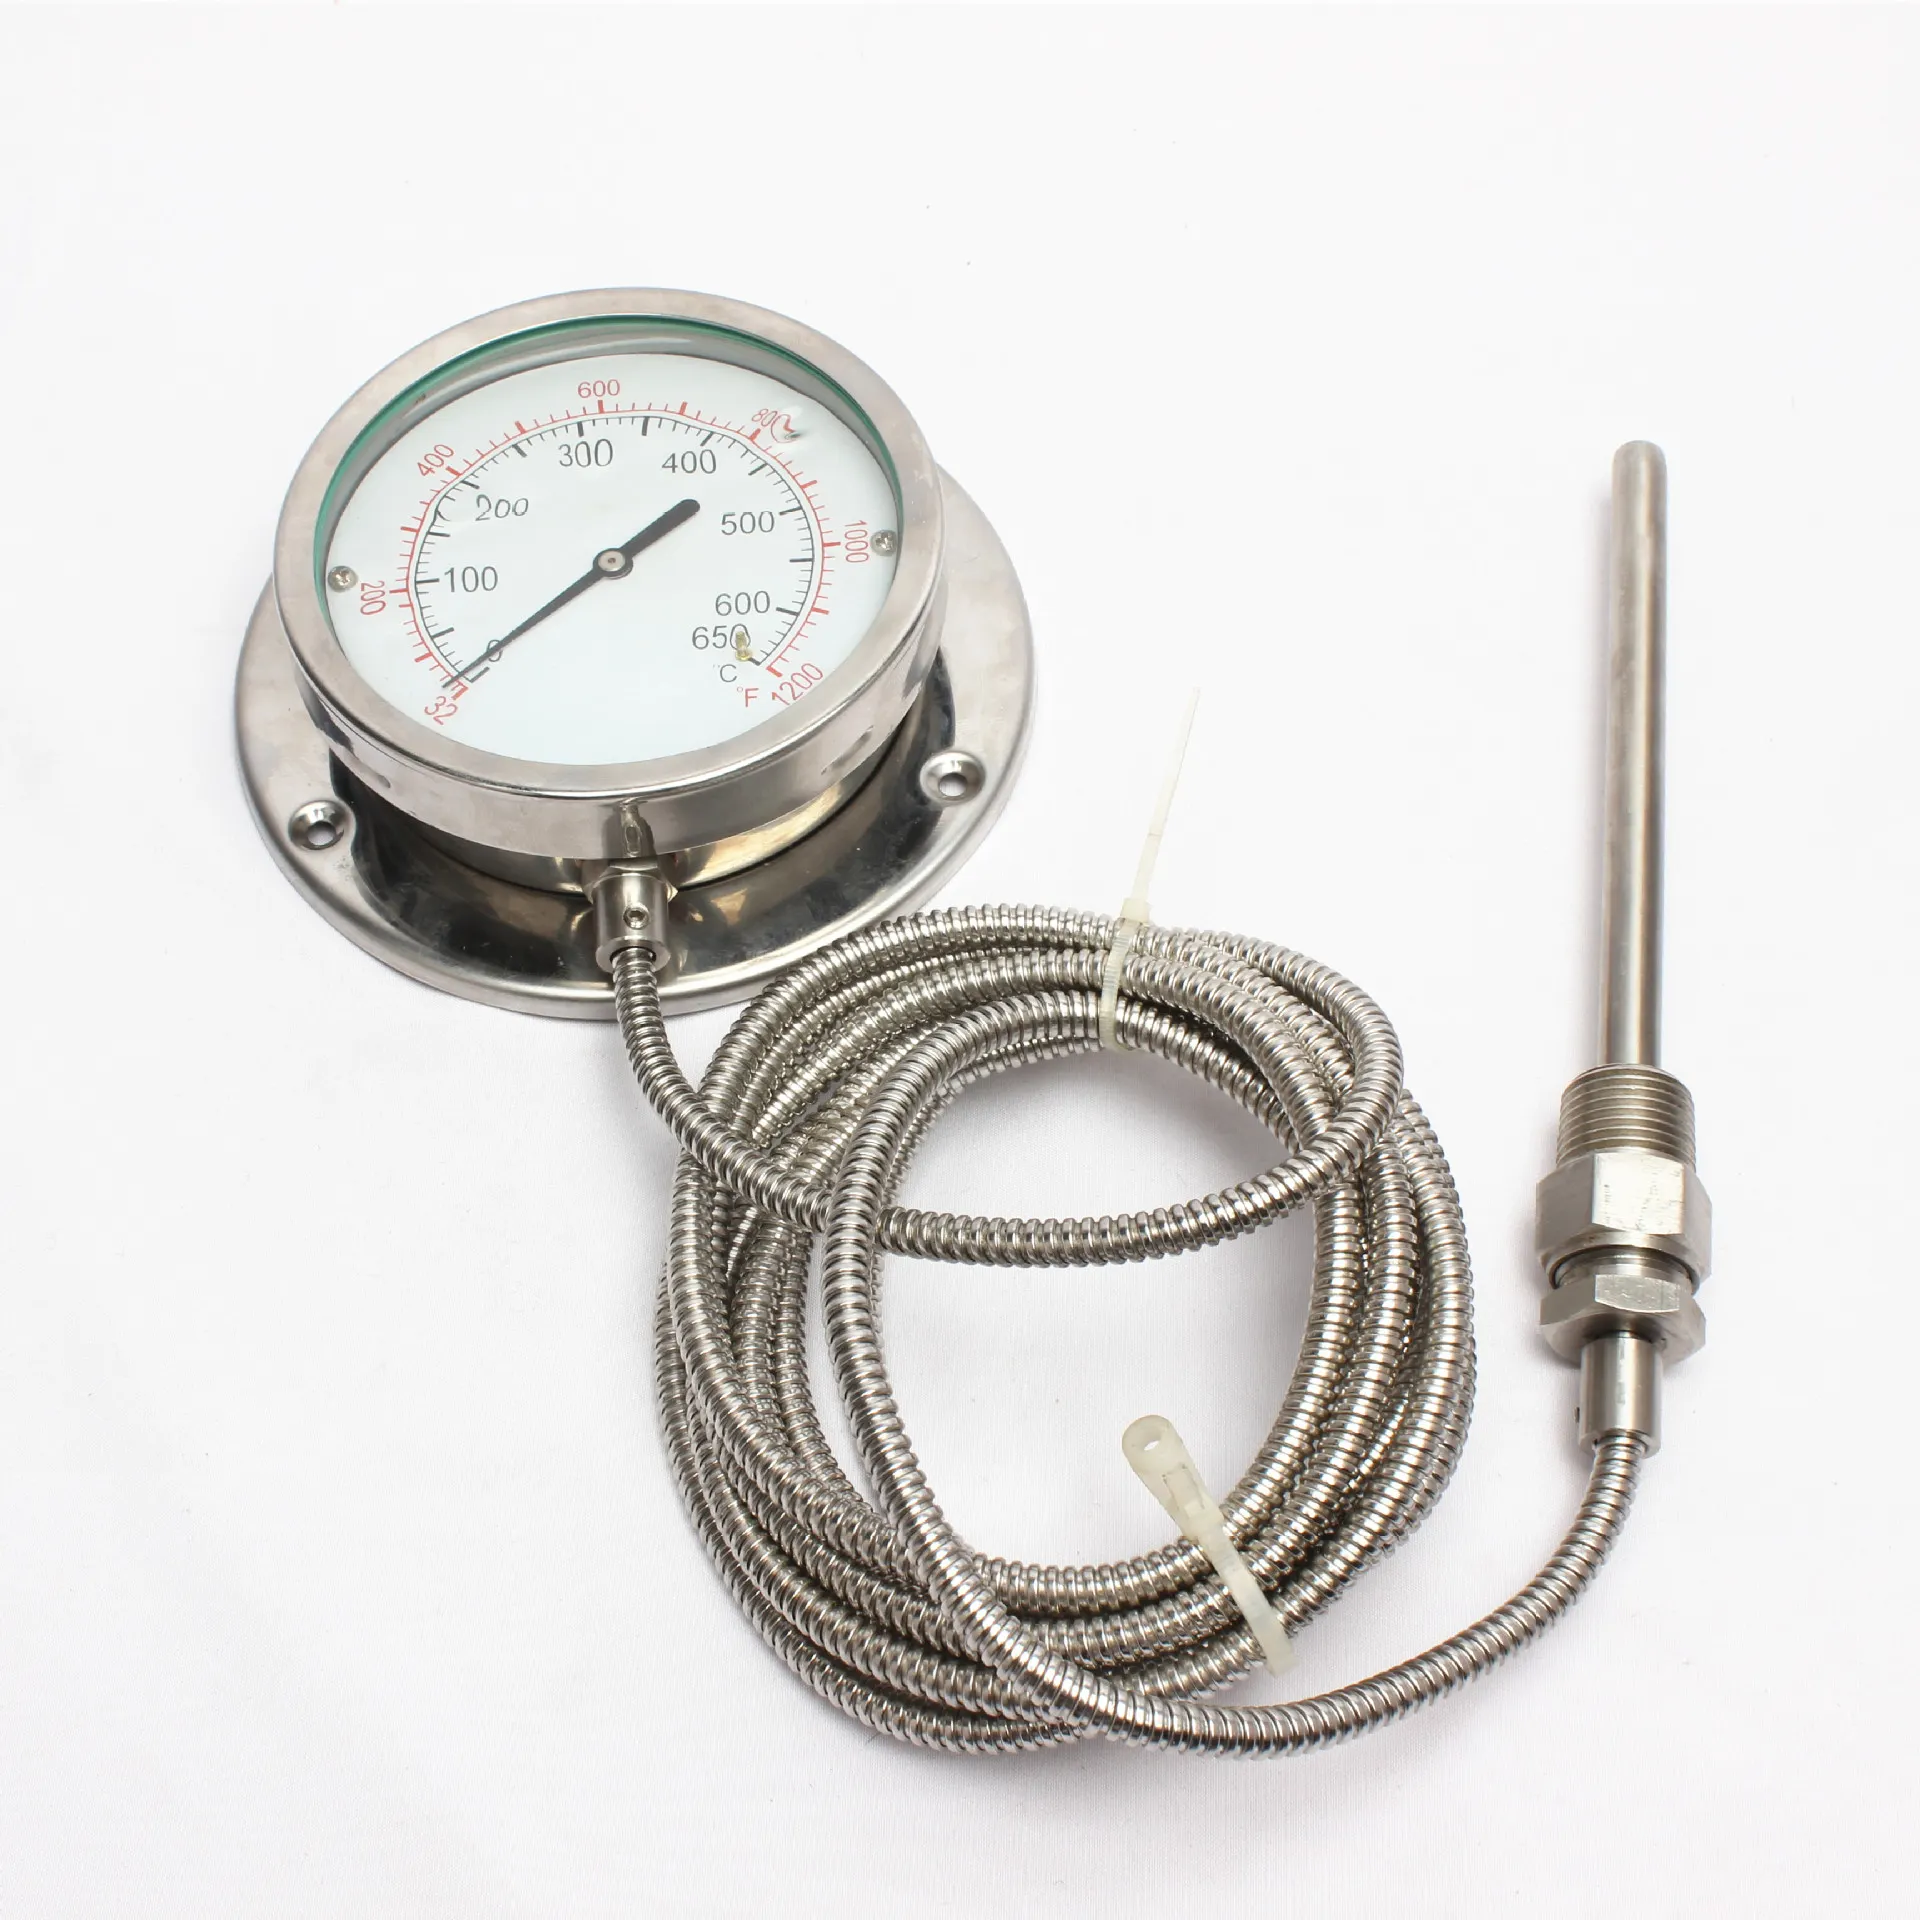 Yüksek kalite paslanmaz çelik 0-650 derece yalıtımlı arama göstergesi termometre Metal basınç kılcal endüstriyel kullanım su yağı